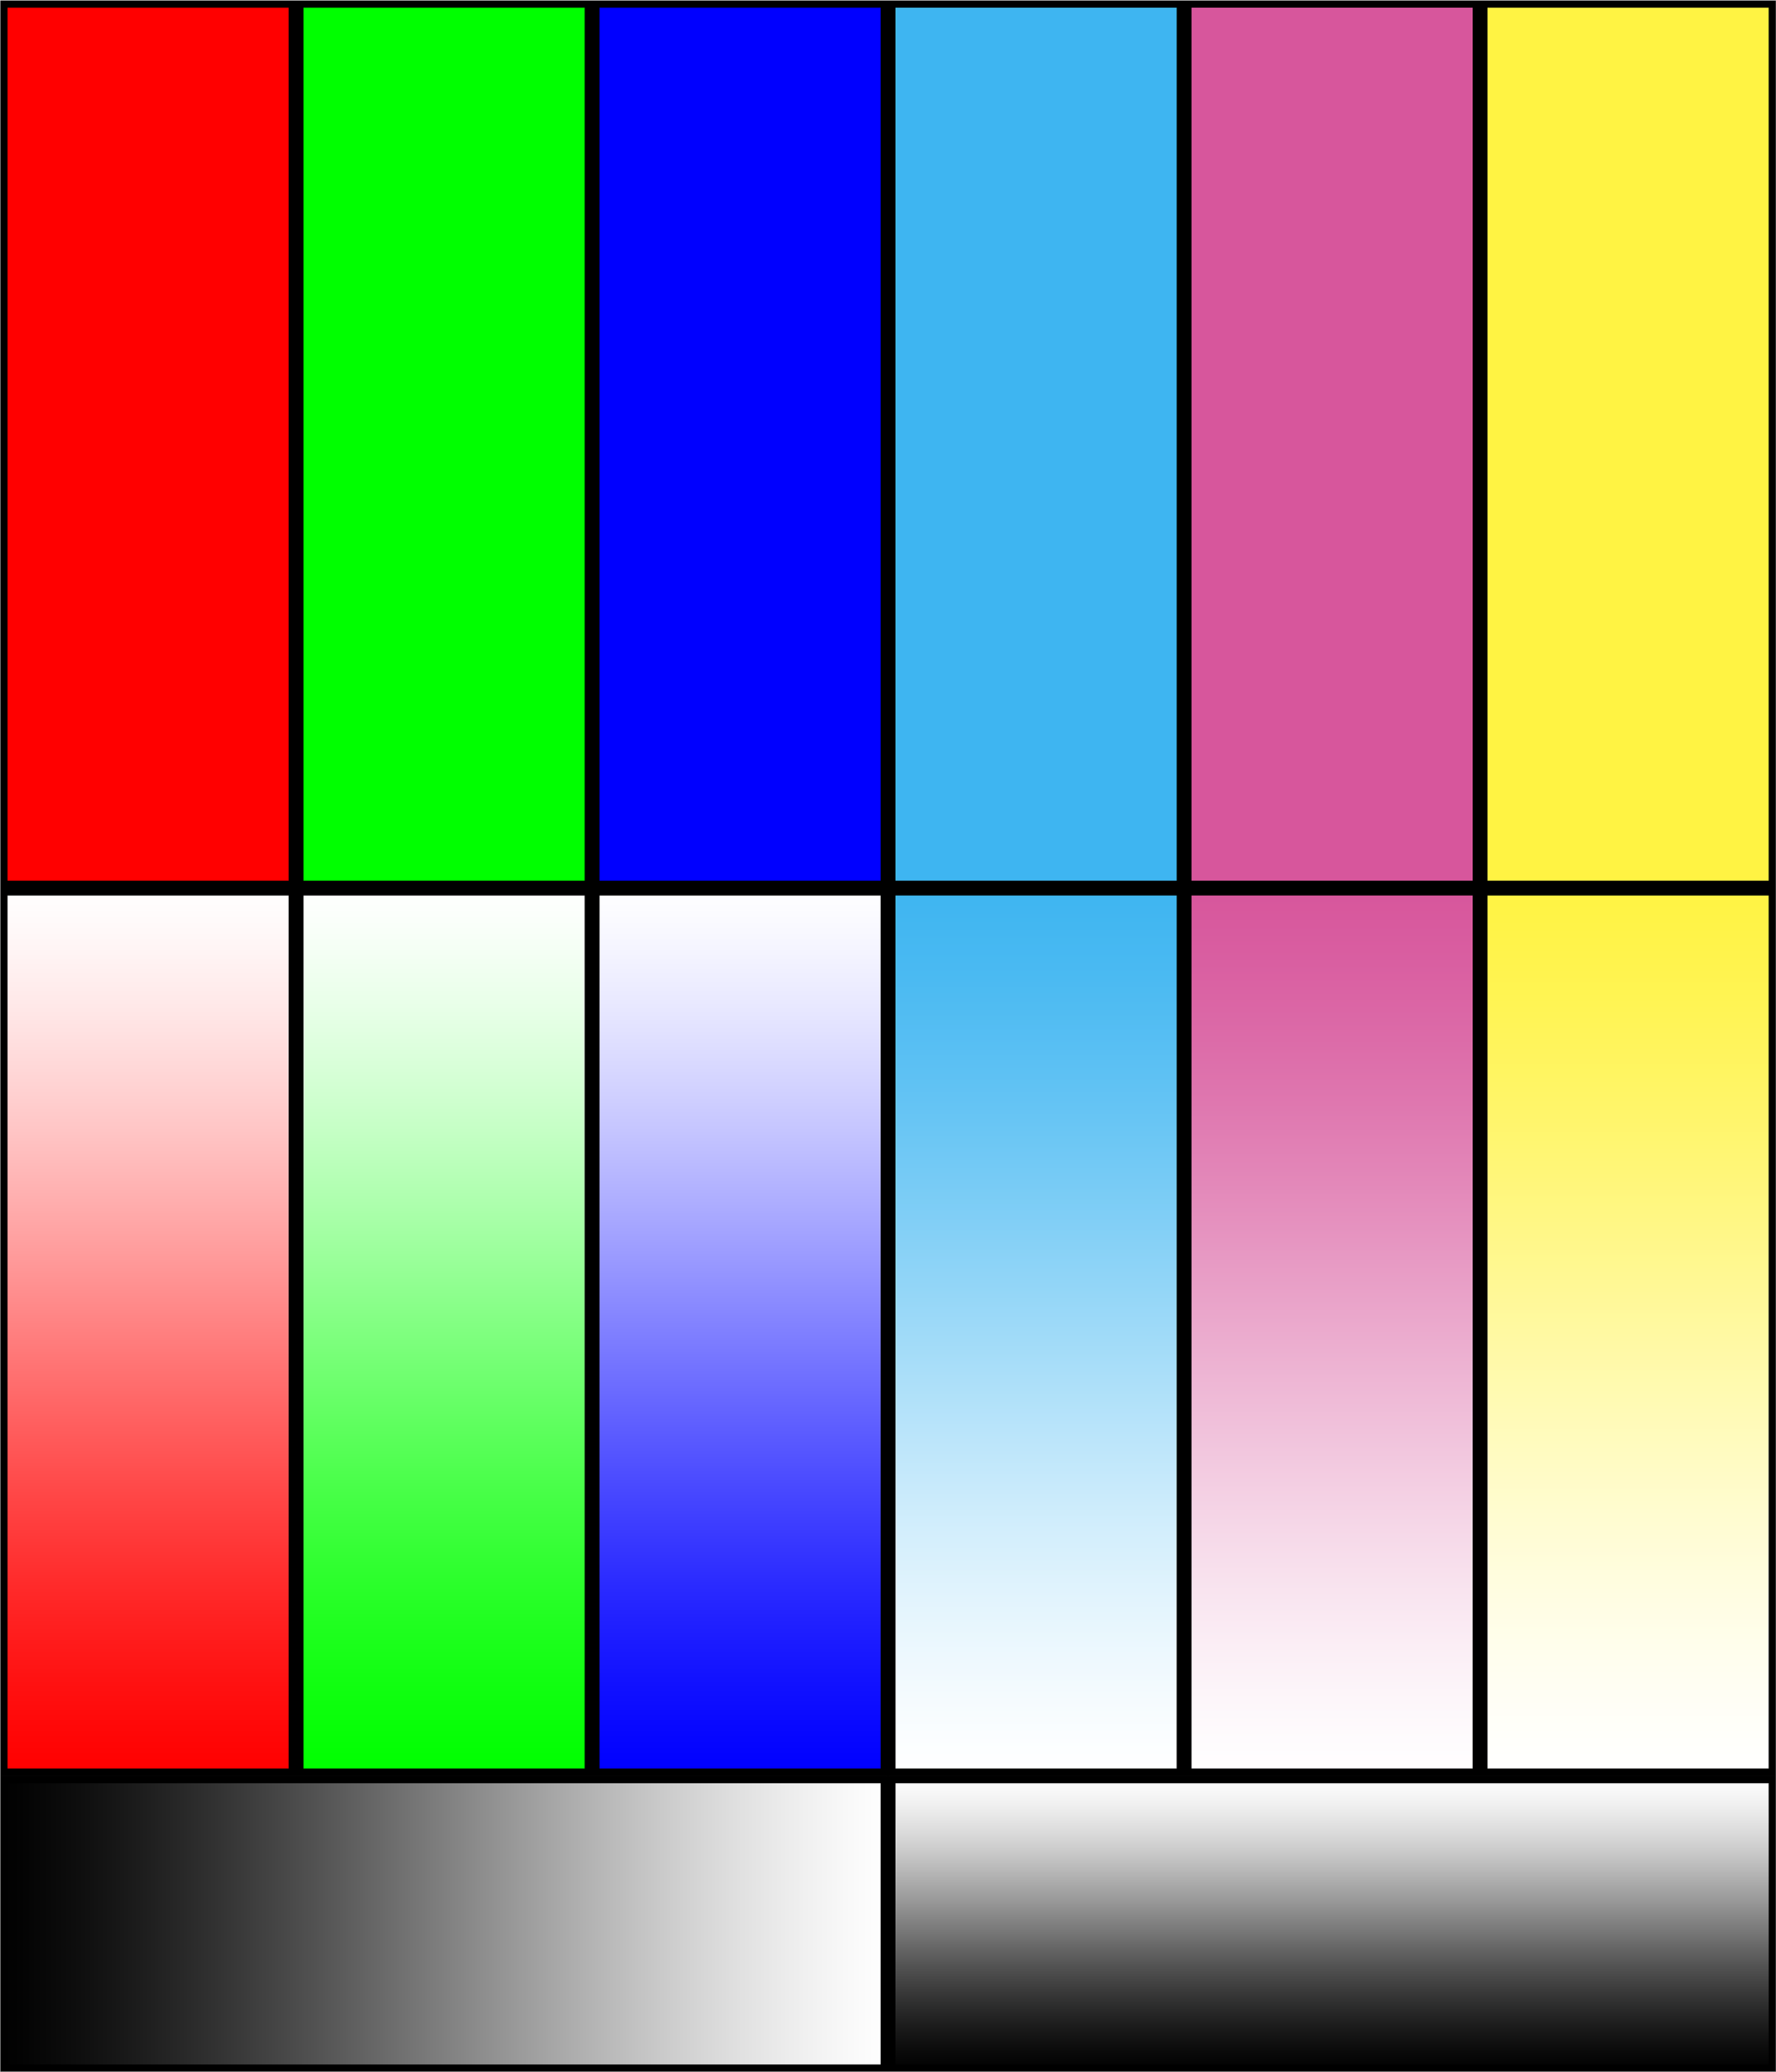 Пример печати принтера. Тестовая печать принтера Эпсон. Тест принтера Эпсон 6 цвета. Тест печати Эпсон 6 цветов. Тестовая печать цветного принтера Эпсон.